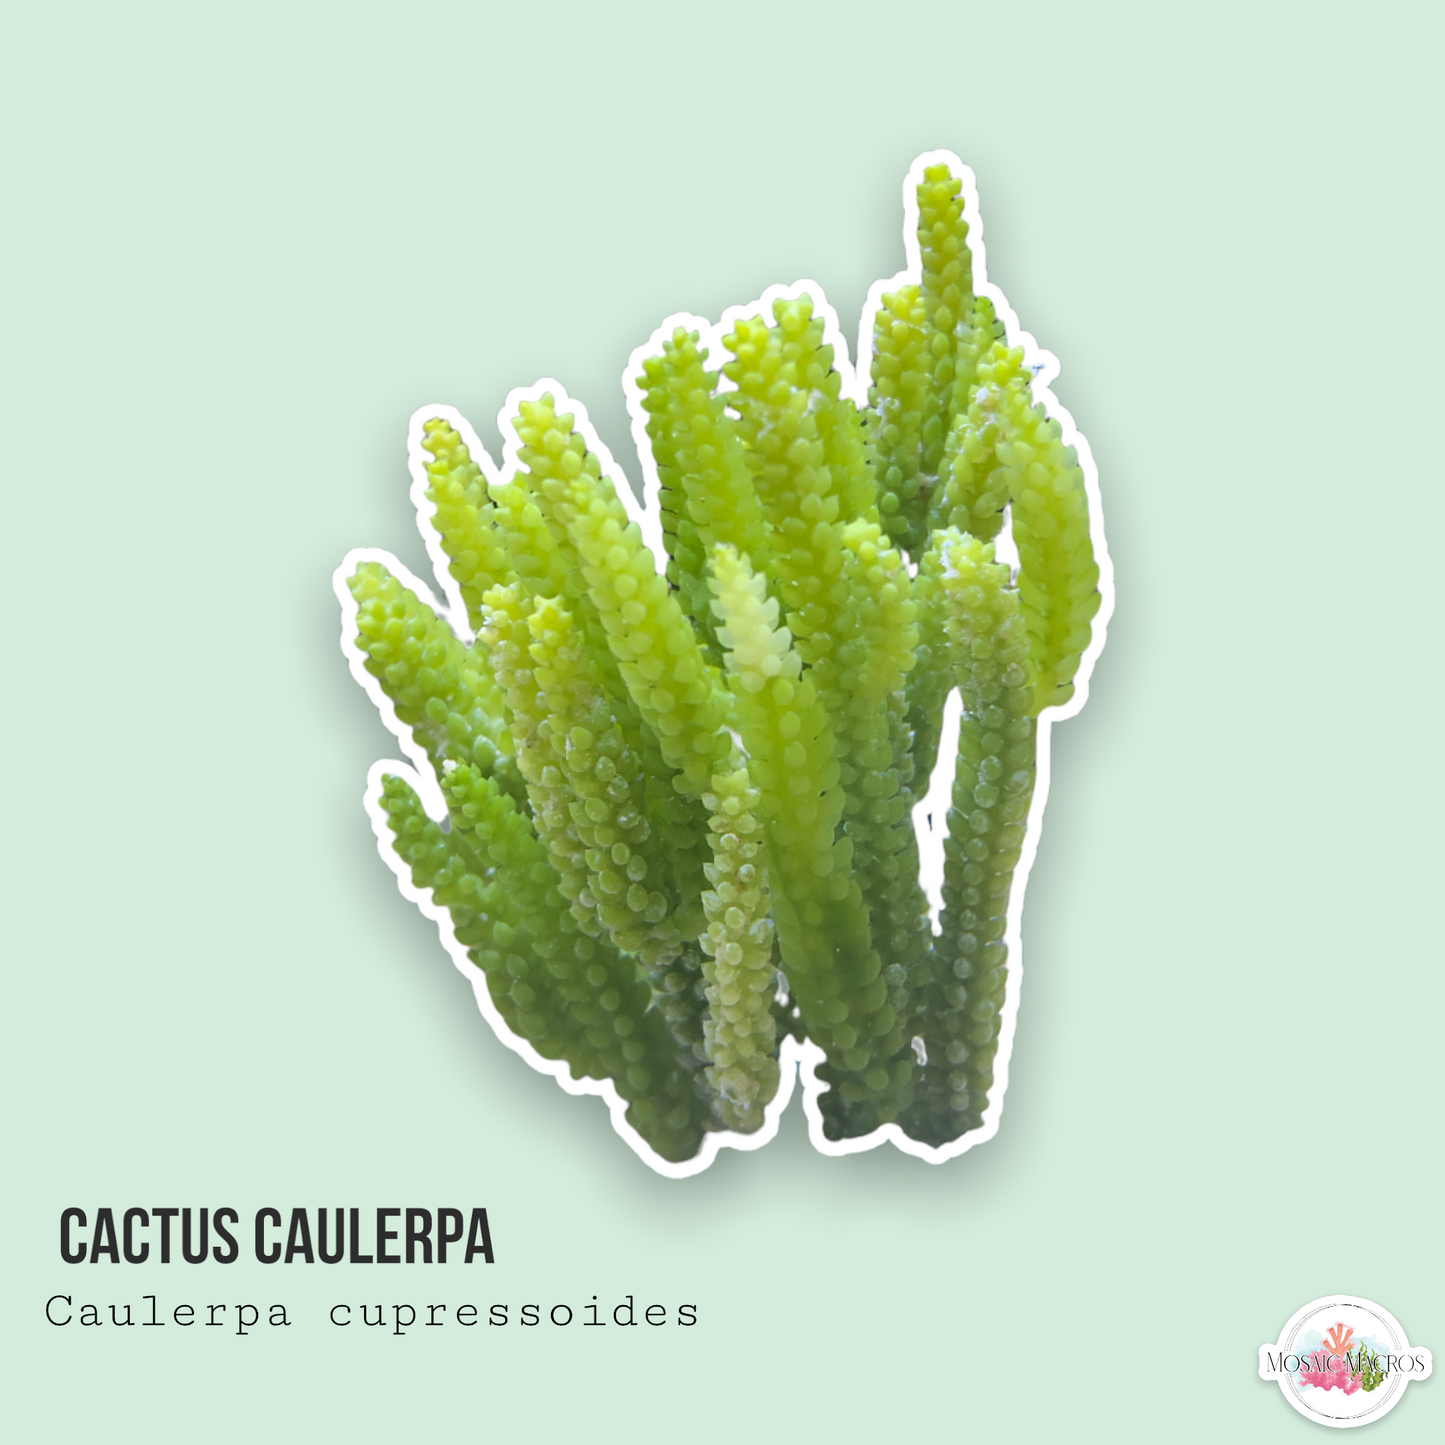 Cactus Caulerpa | Caulerpa cupressoides